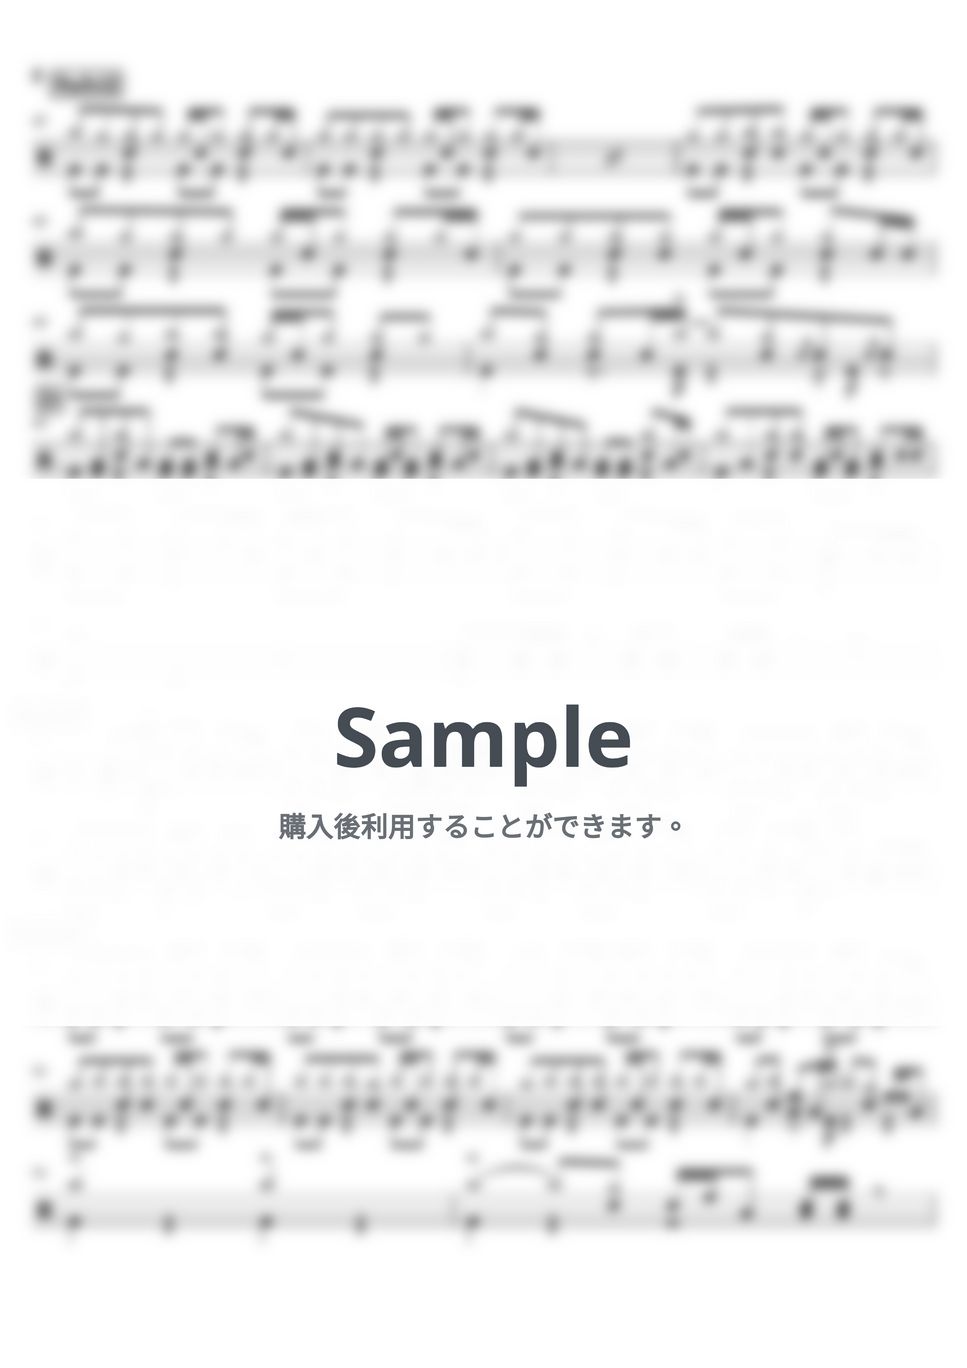 にしな - ヘビースモーク（シンプルver.） (ドラム譜面/初心者向けアレンジ) by cabal